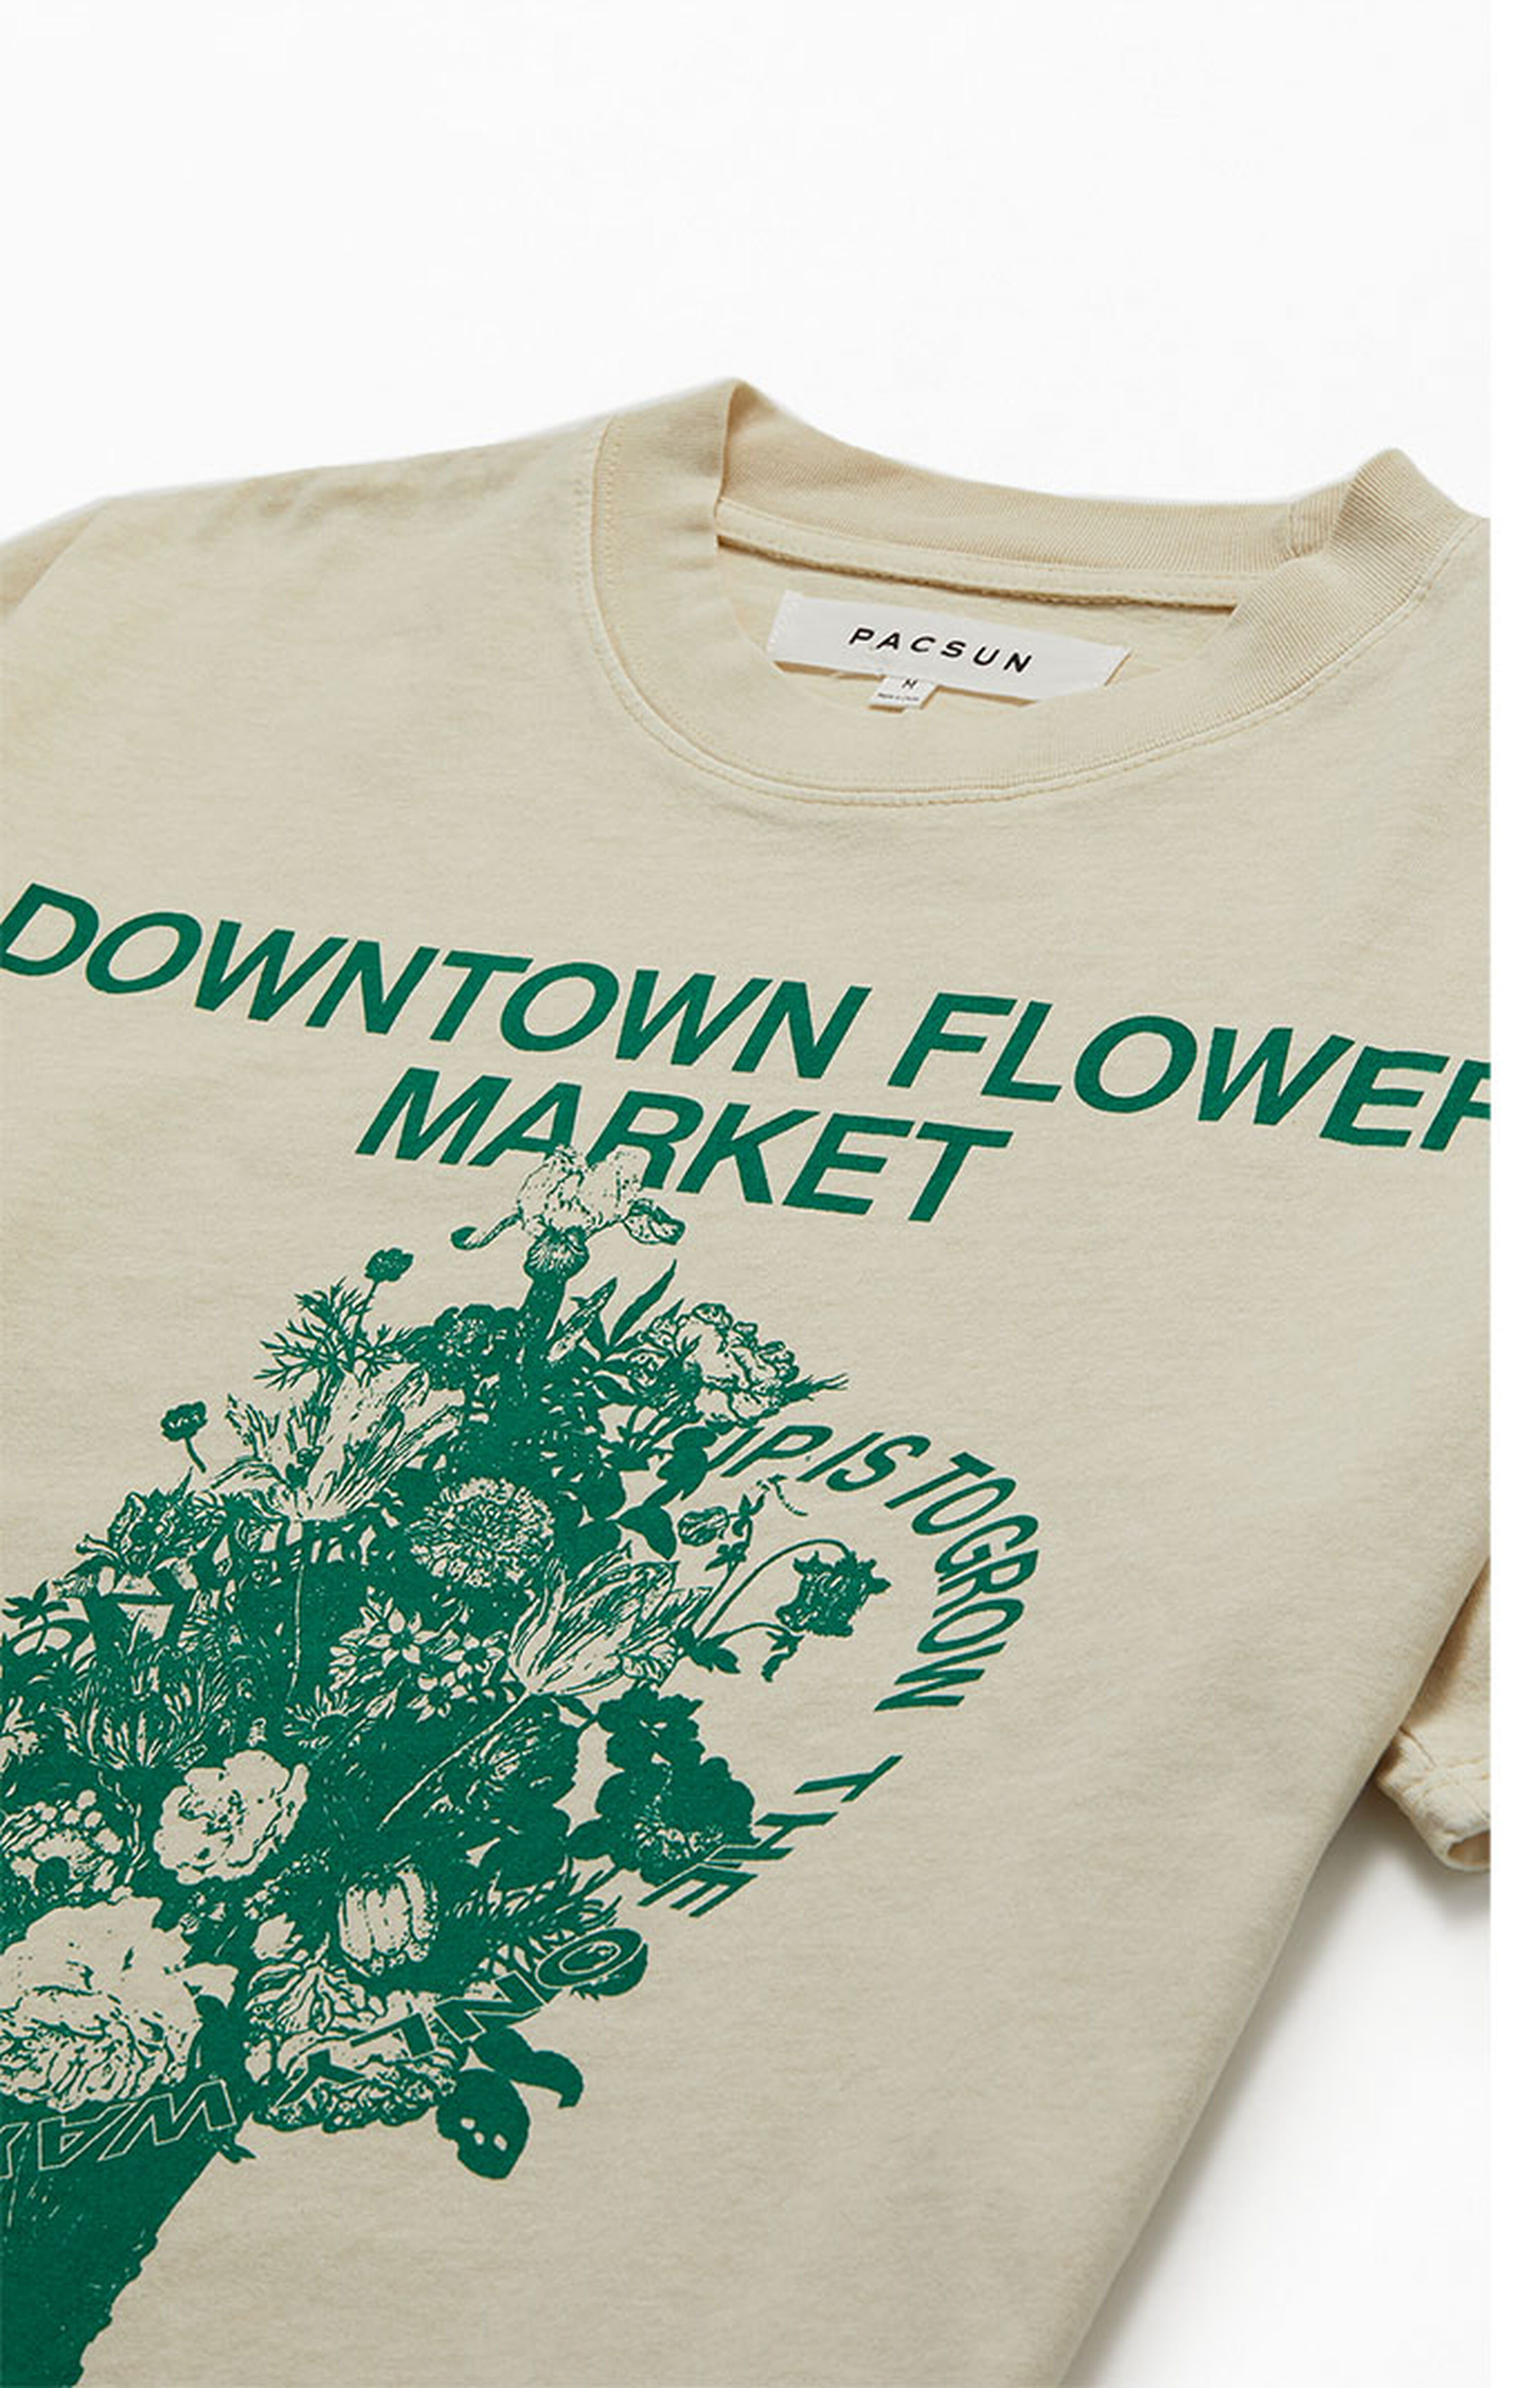 PacSun Flower Market T-Shirt | PacSun